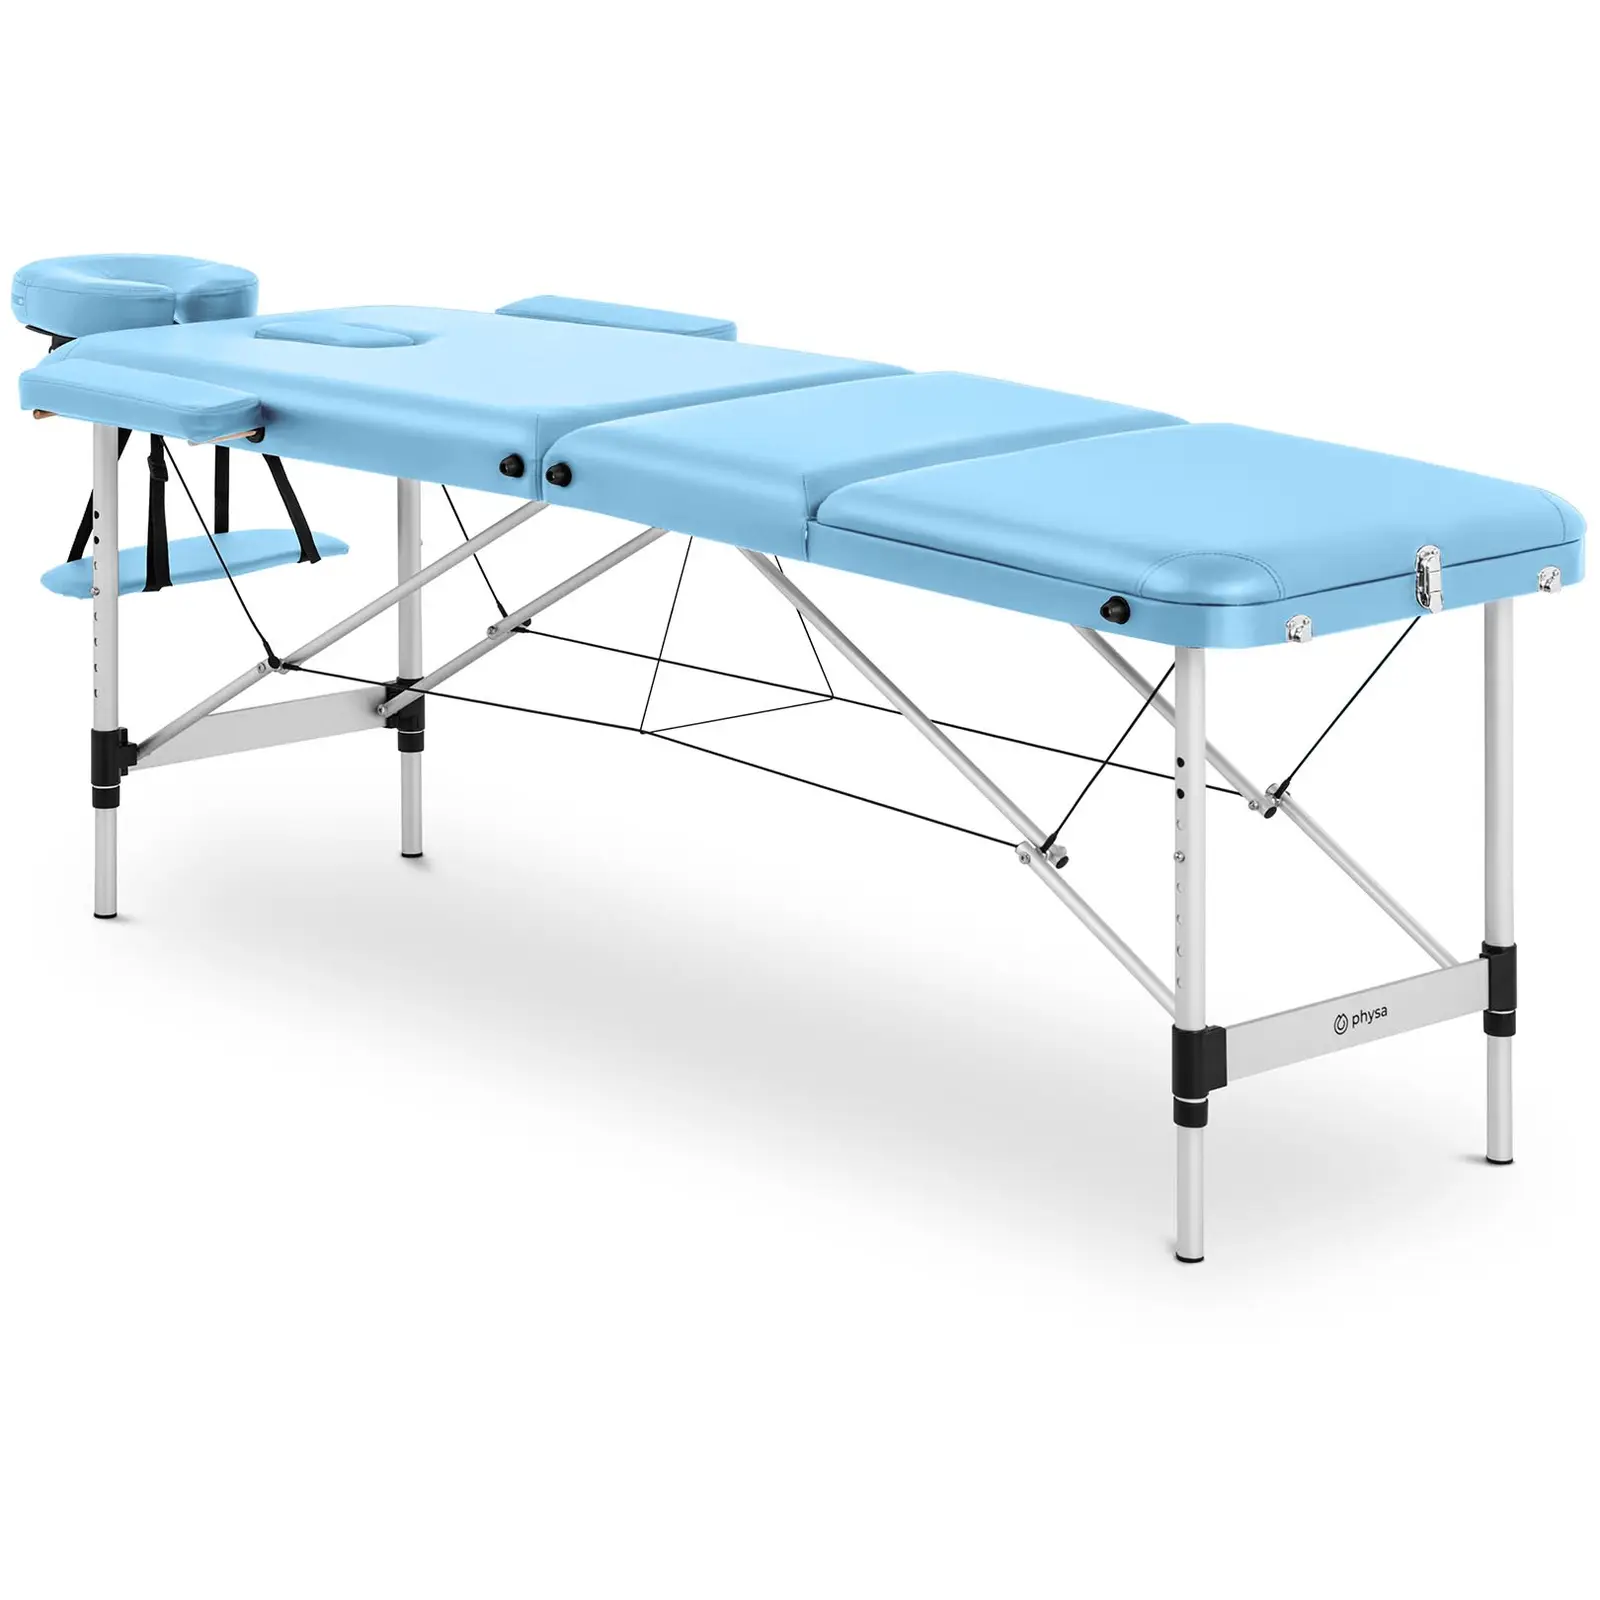 Table de massage pliante - 185 x 60 x 60-81 cm - 180 kg - Turquoise - 0